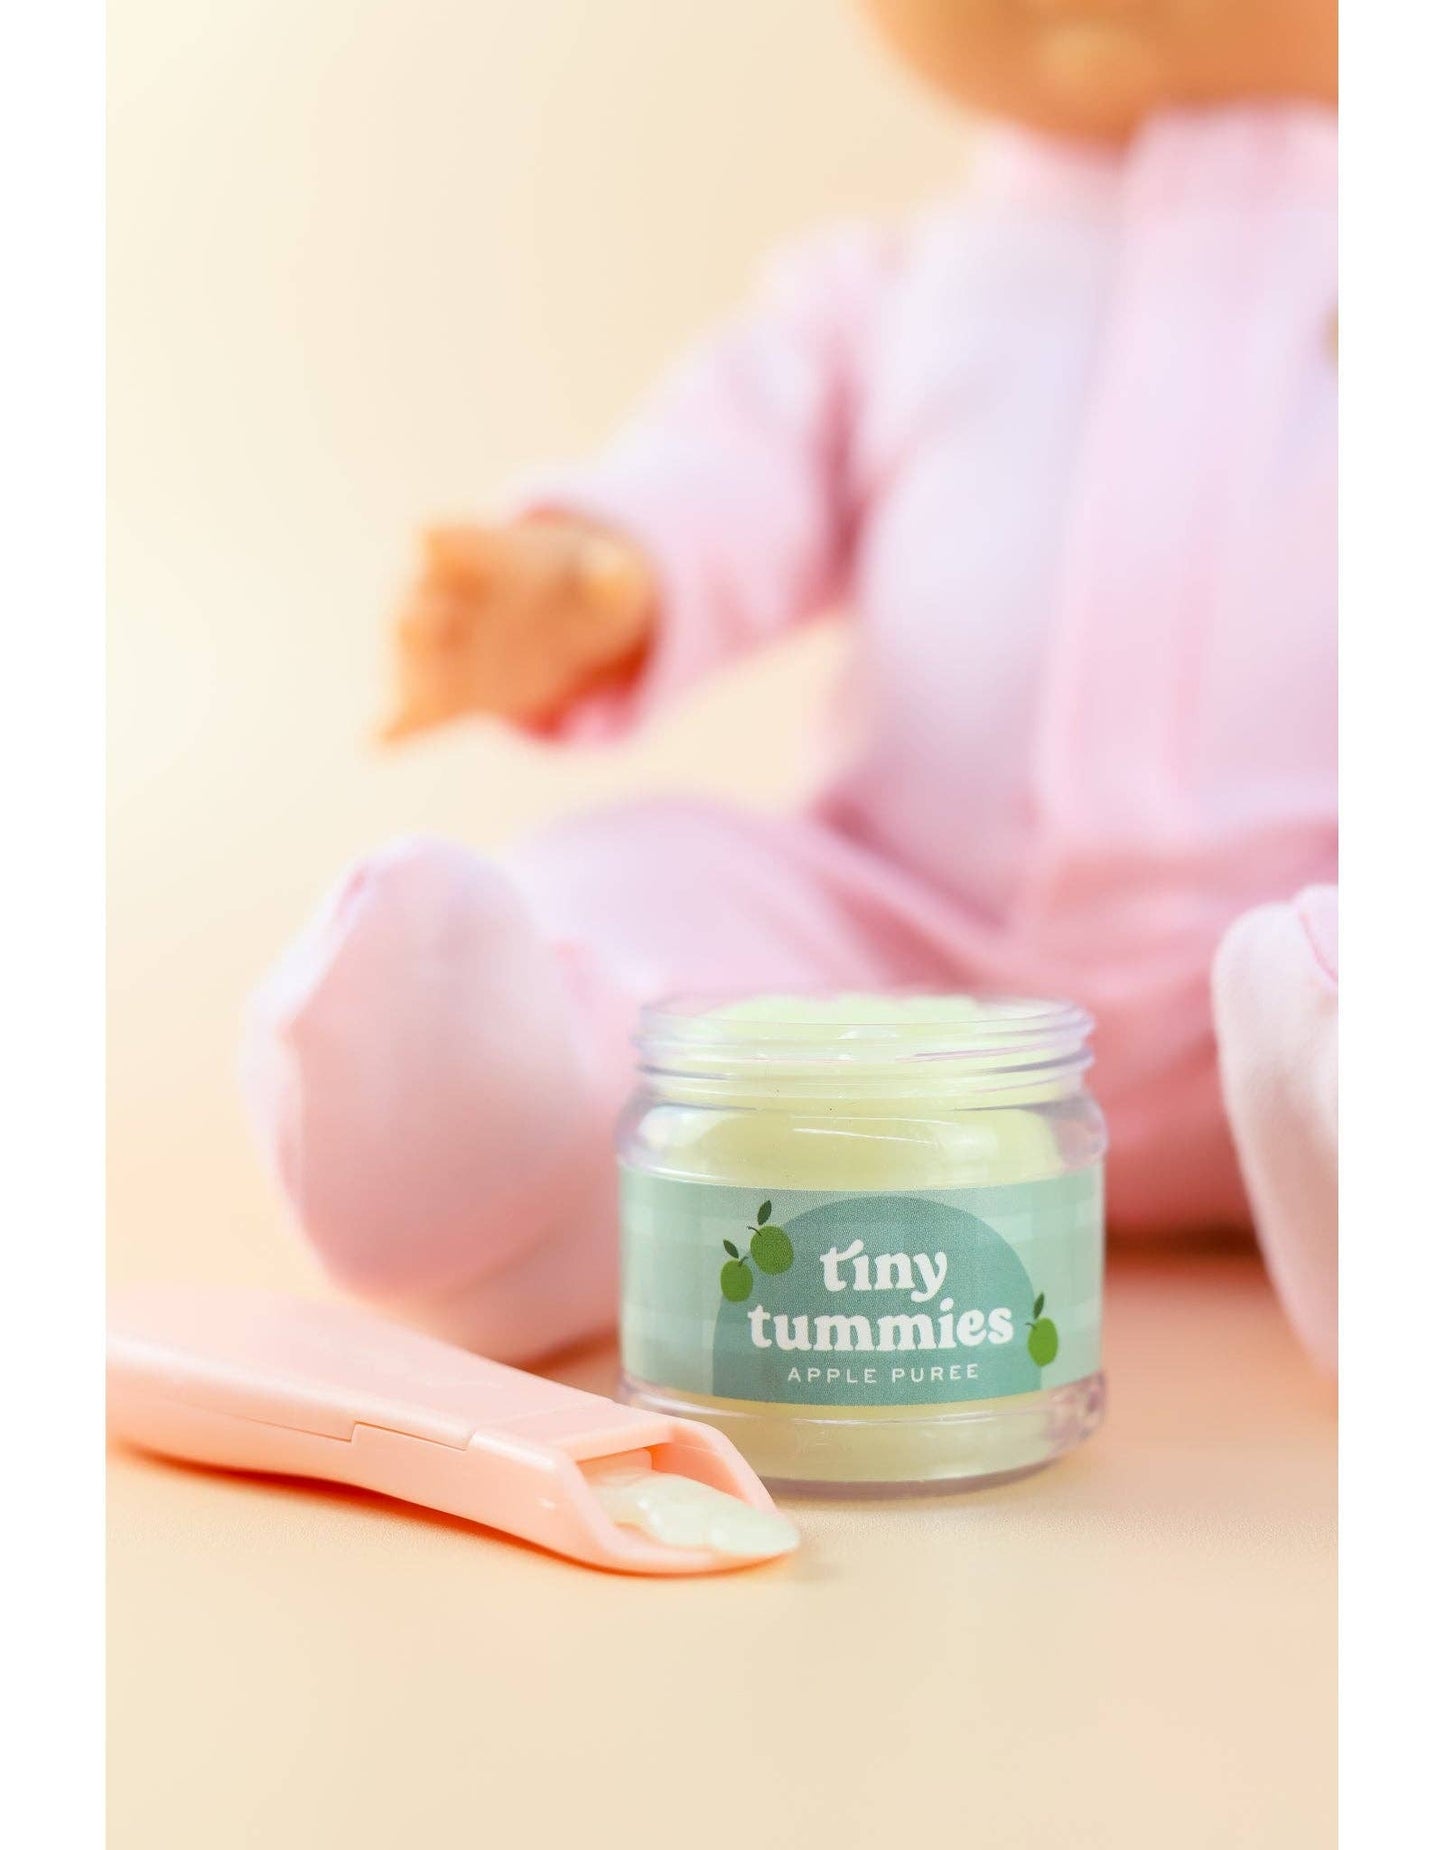 Tiny Tummies - Apple jelly food - Jar and spoon